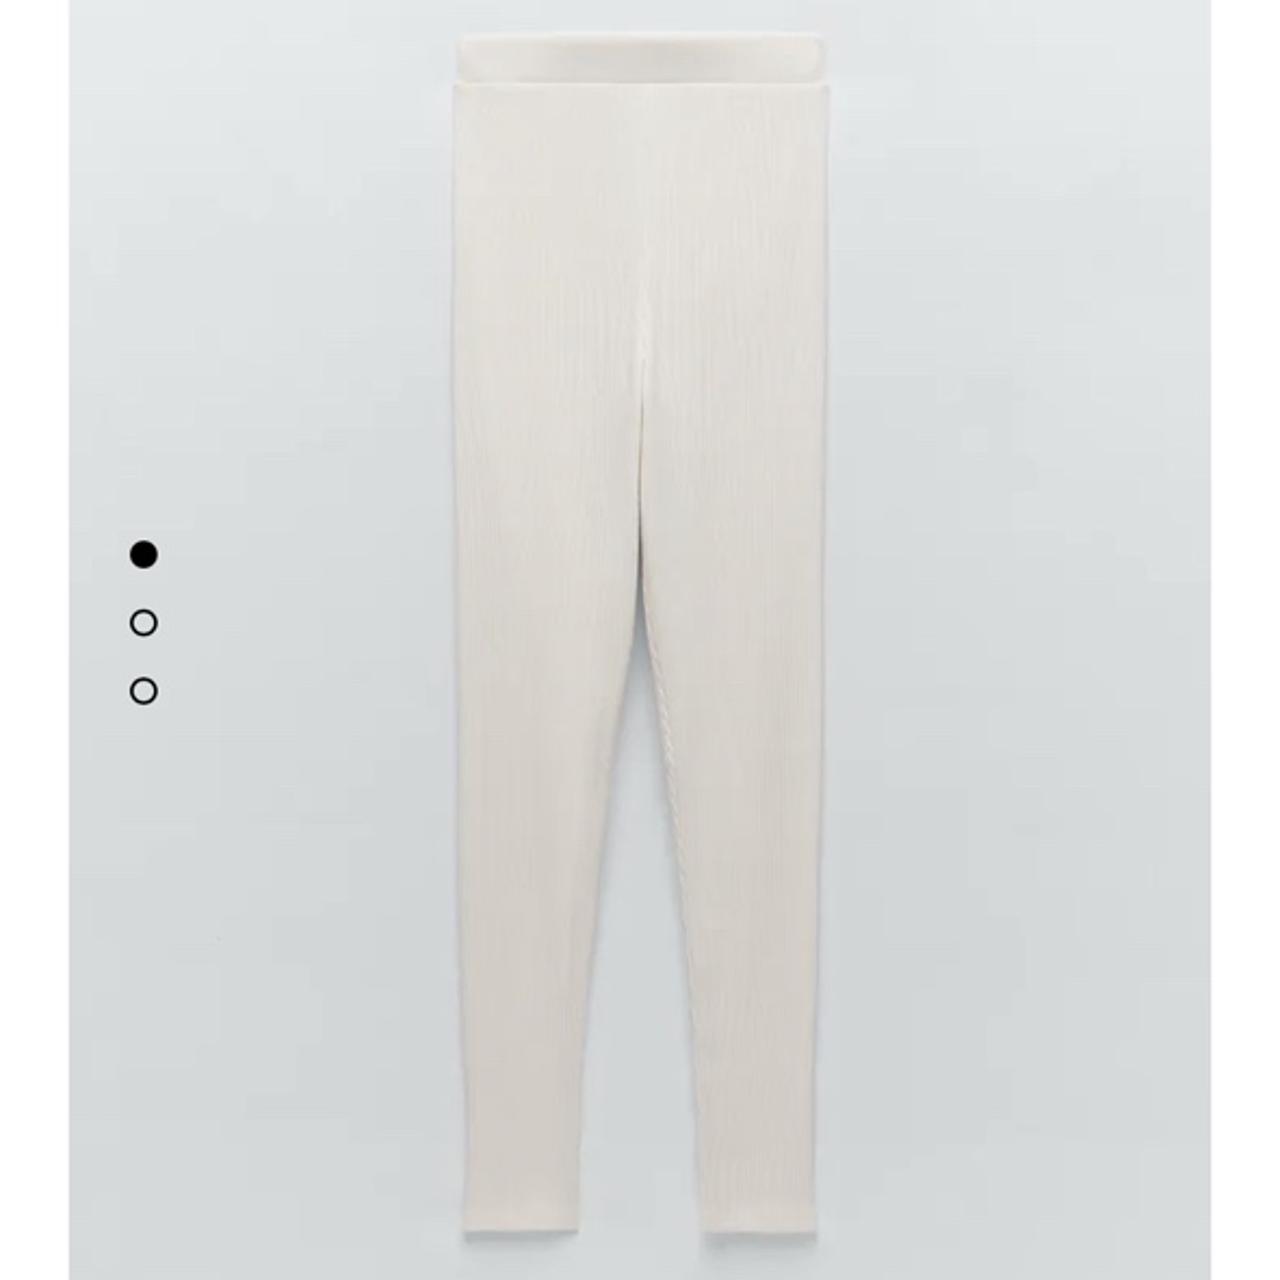 Ribbed leggings from Zara, so cute but selling as - Depop